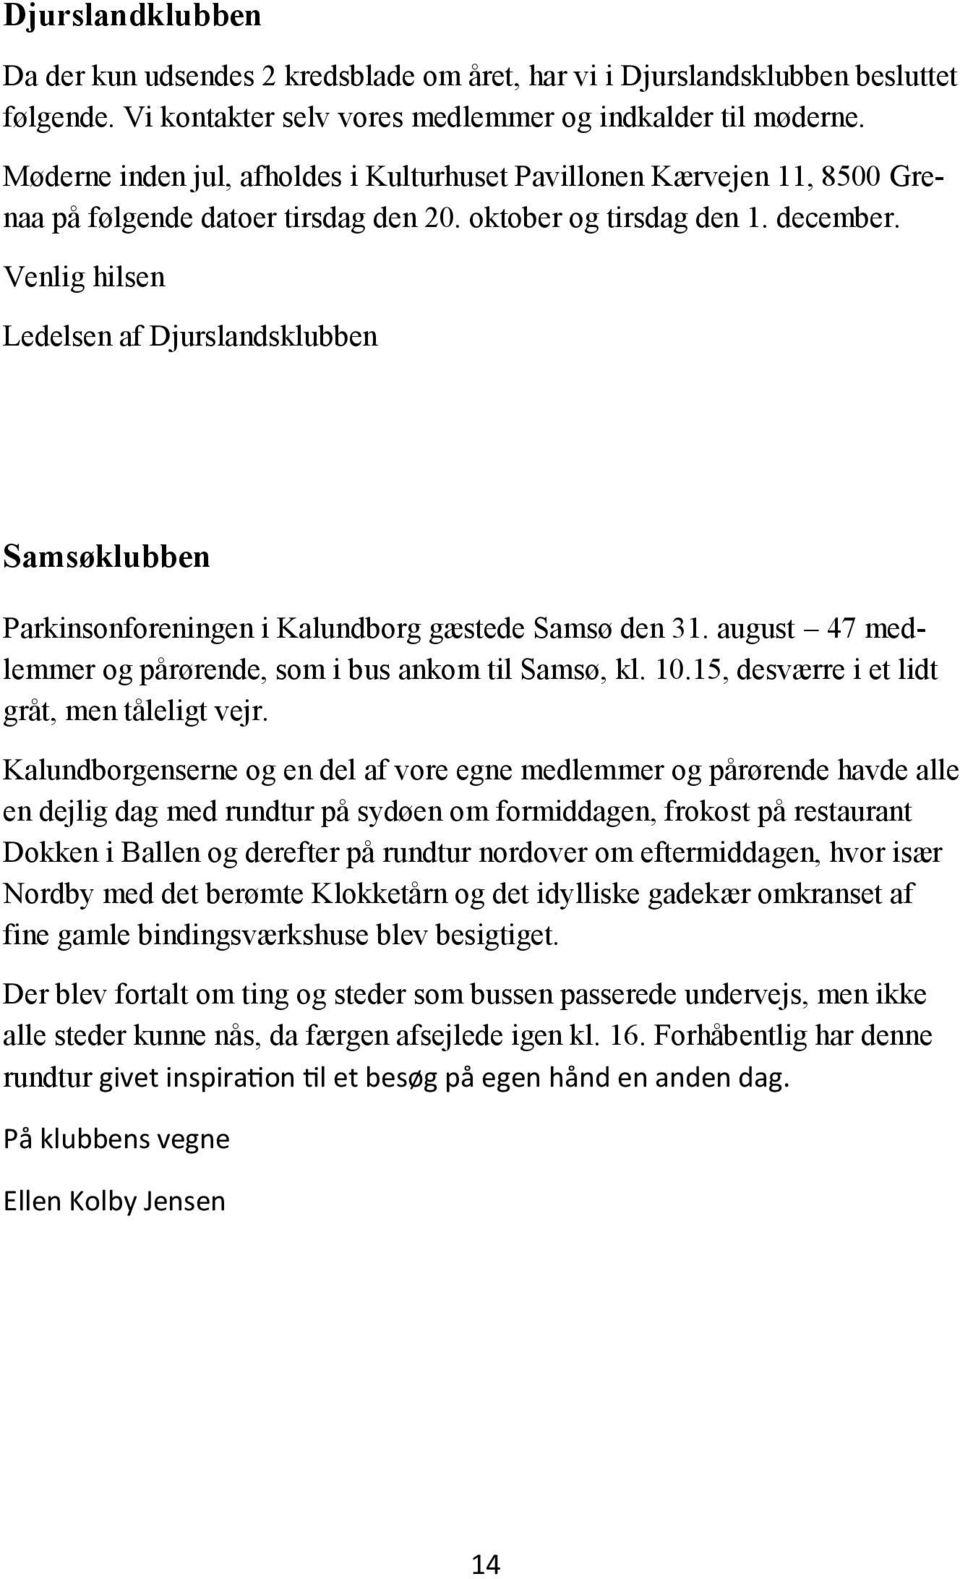 Venlig hilsen Ledelsen af Djurslandsklubben Samsøklubben Parkinsonforeningen i Kalundborg gæstede Samsø den 31. august 47 medlemmer og pårørende, som i bus ankom til Samsø, kl. 10.